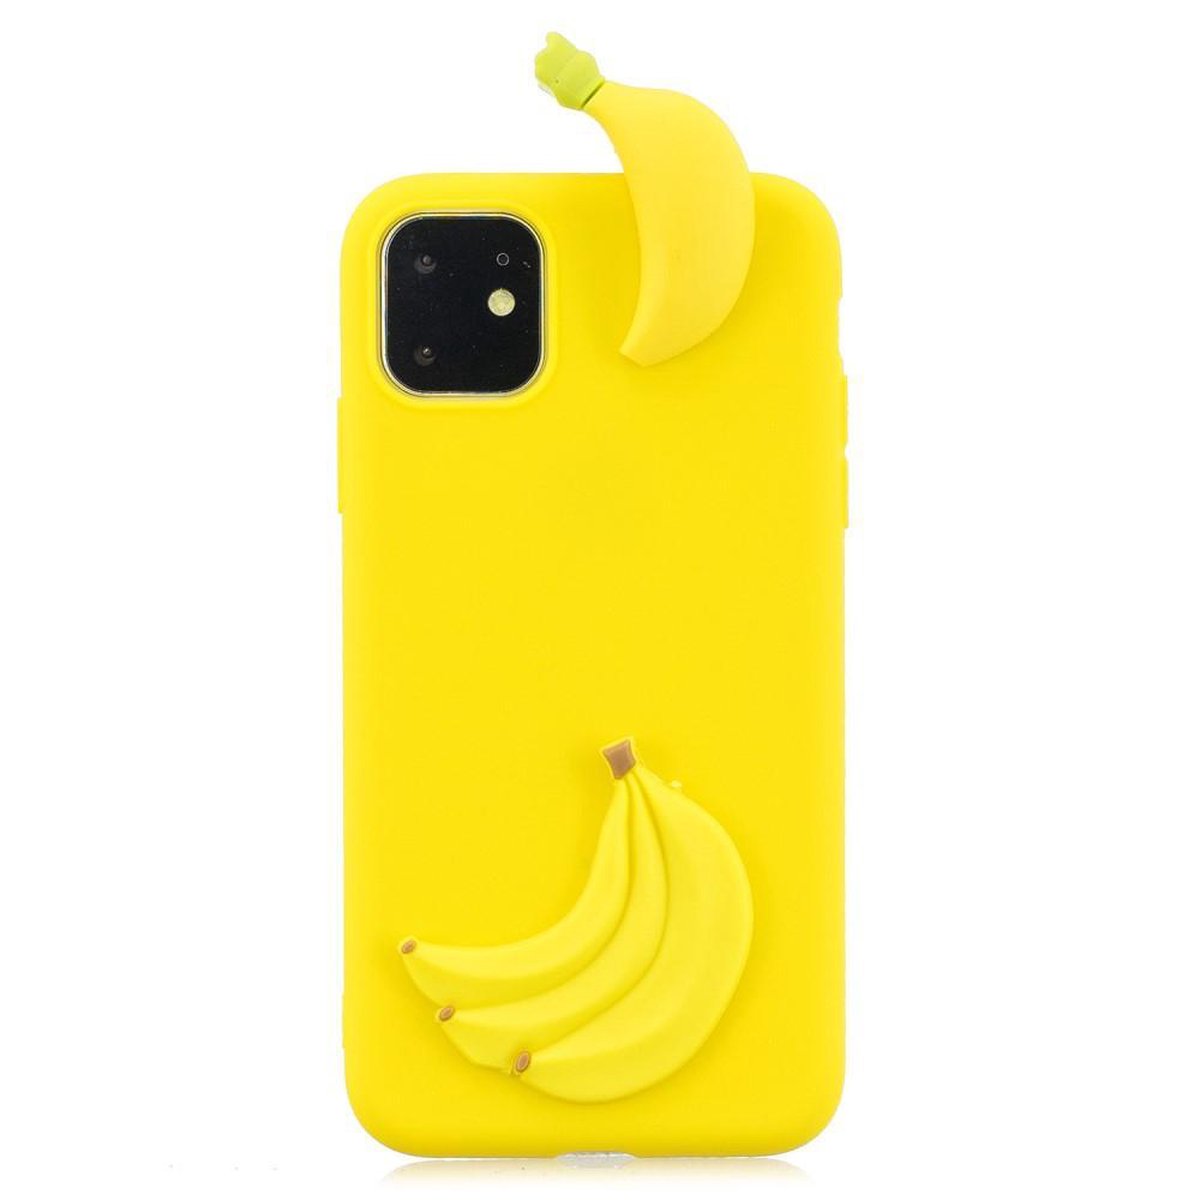 Speelse softcase met 3D bananen voor iPhone 11 6.1 inch - Geel